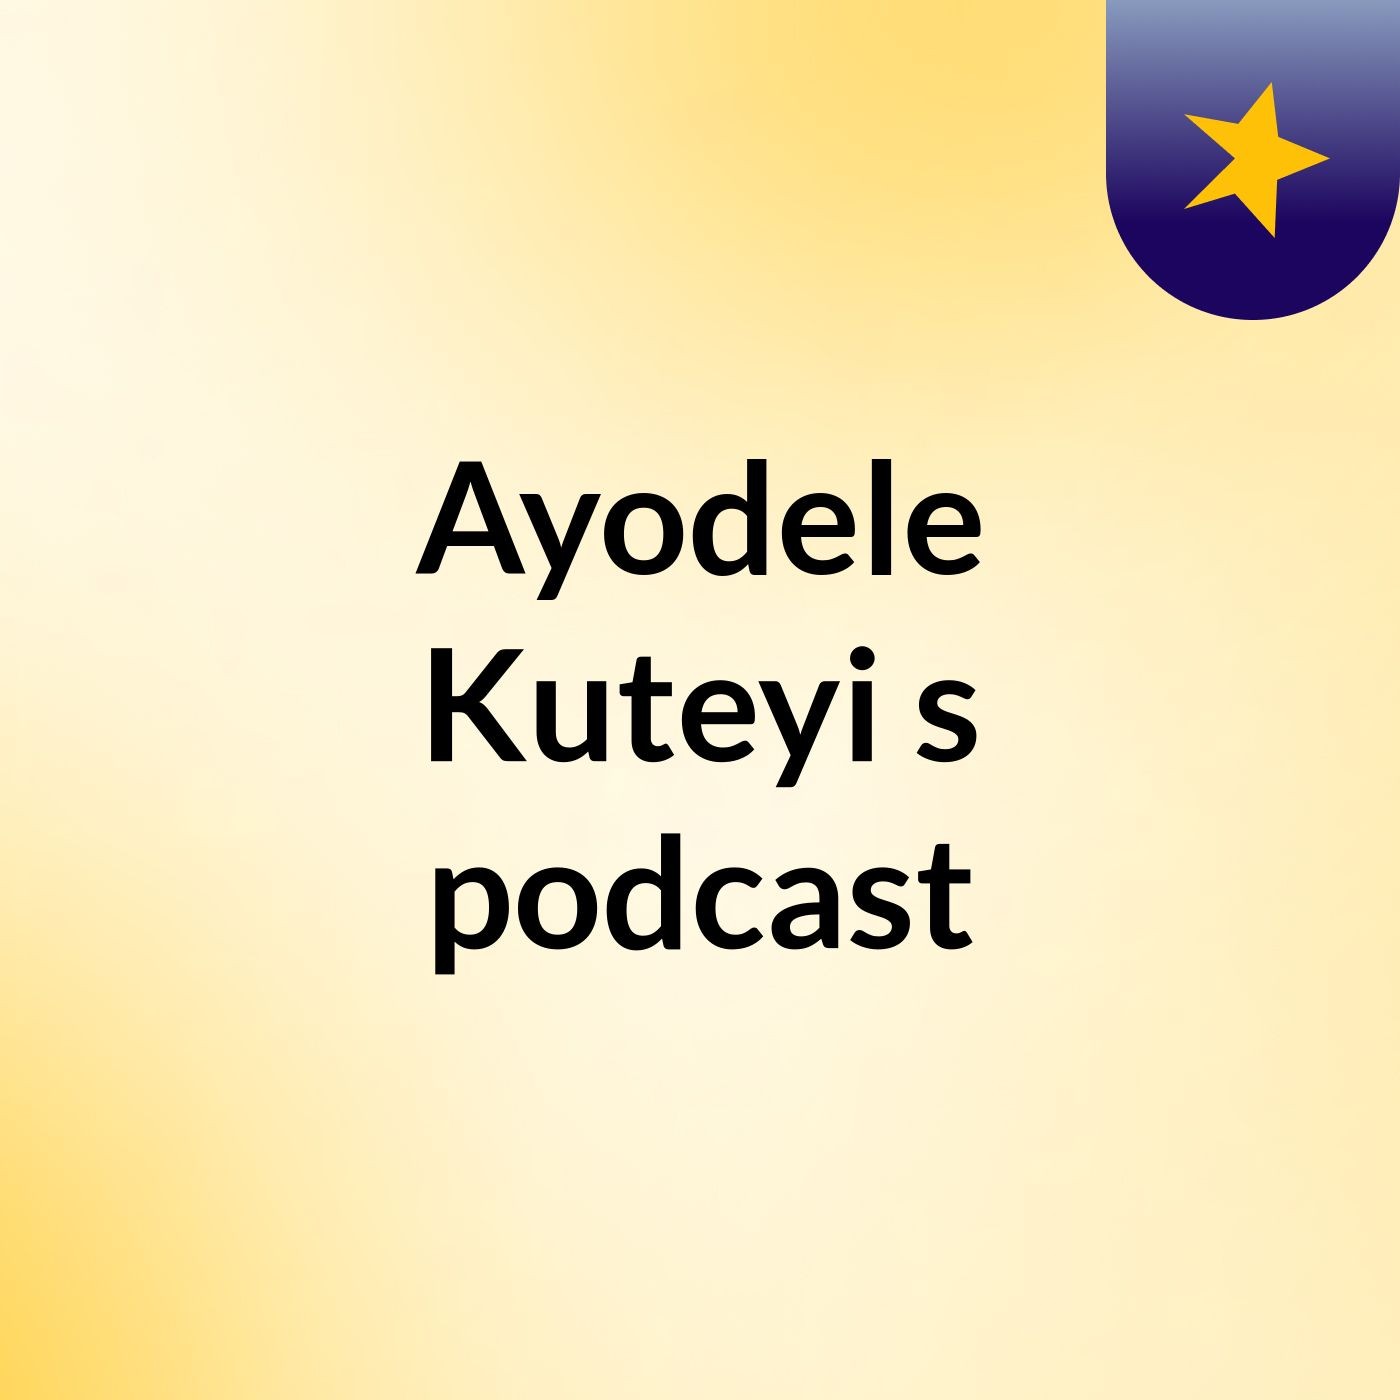 Episode 28 - Ayodele Kuteyi's podcast